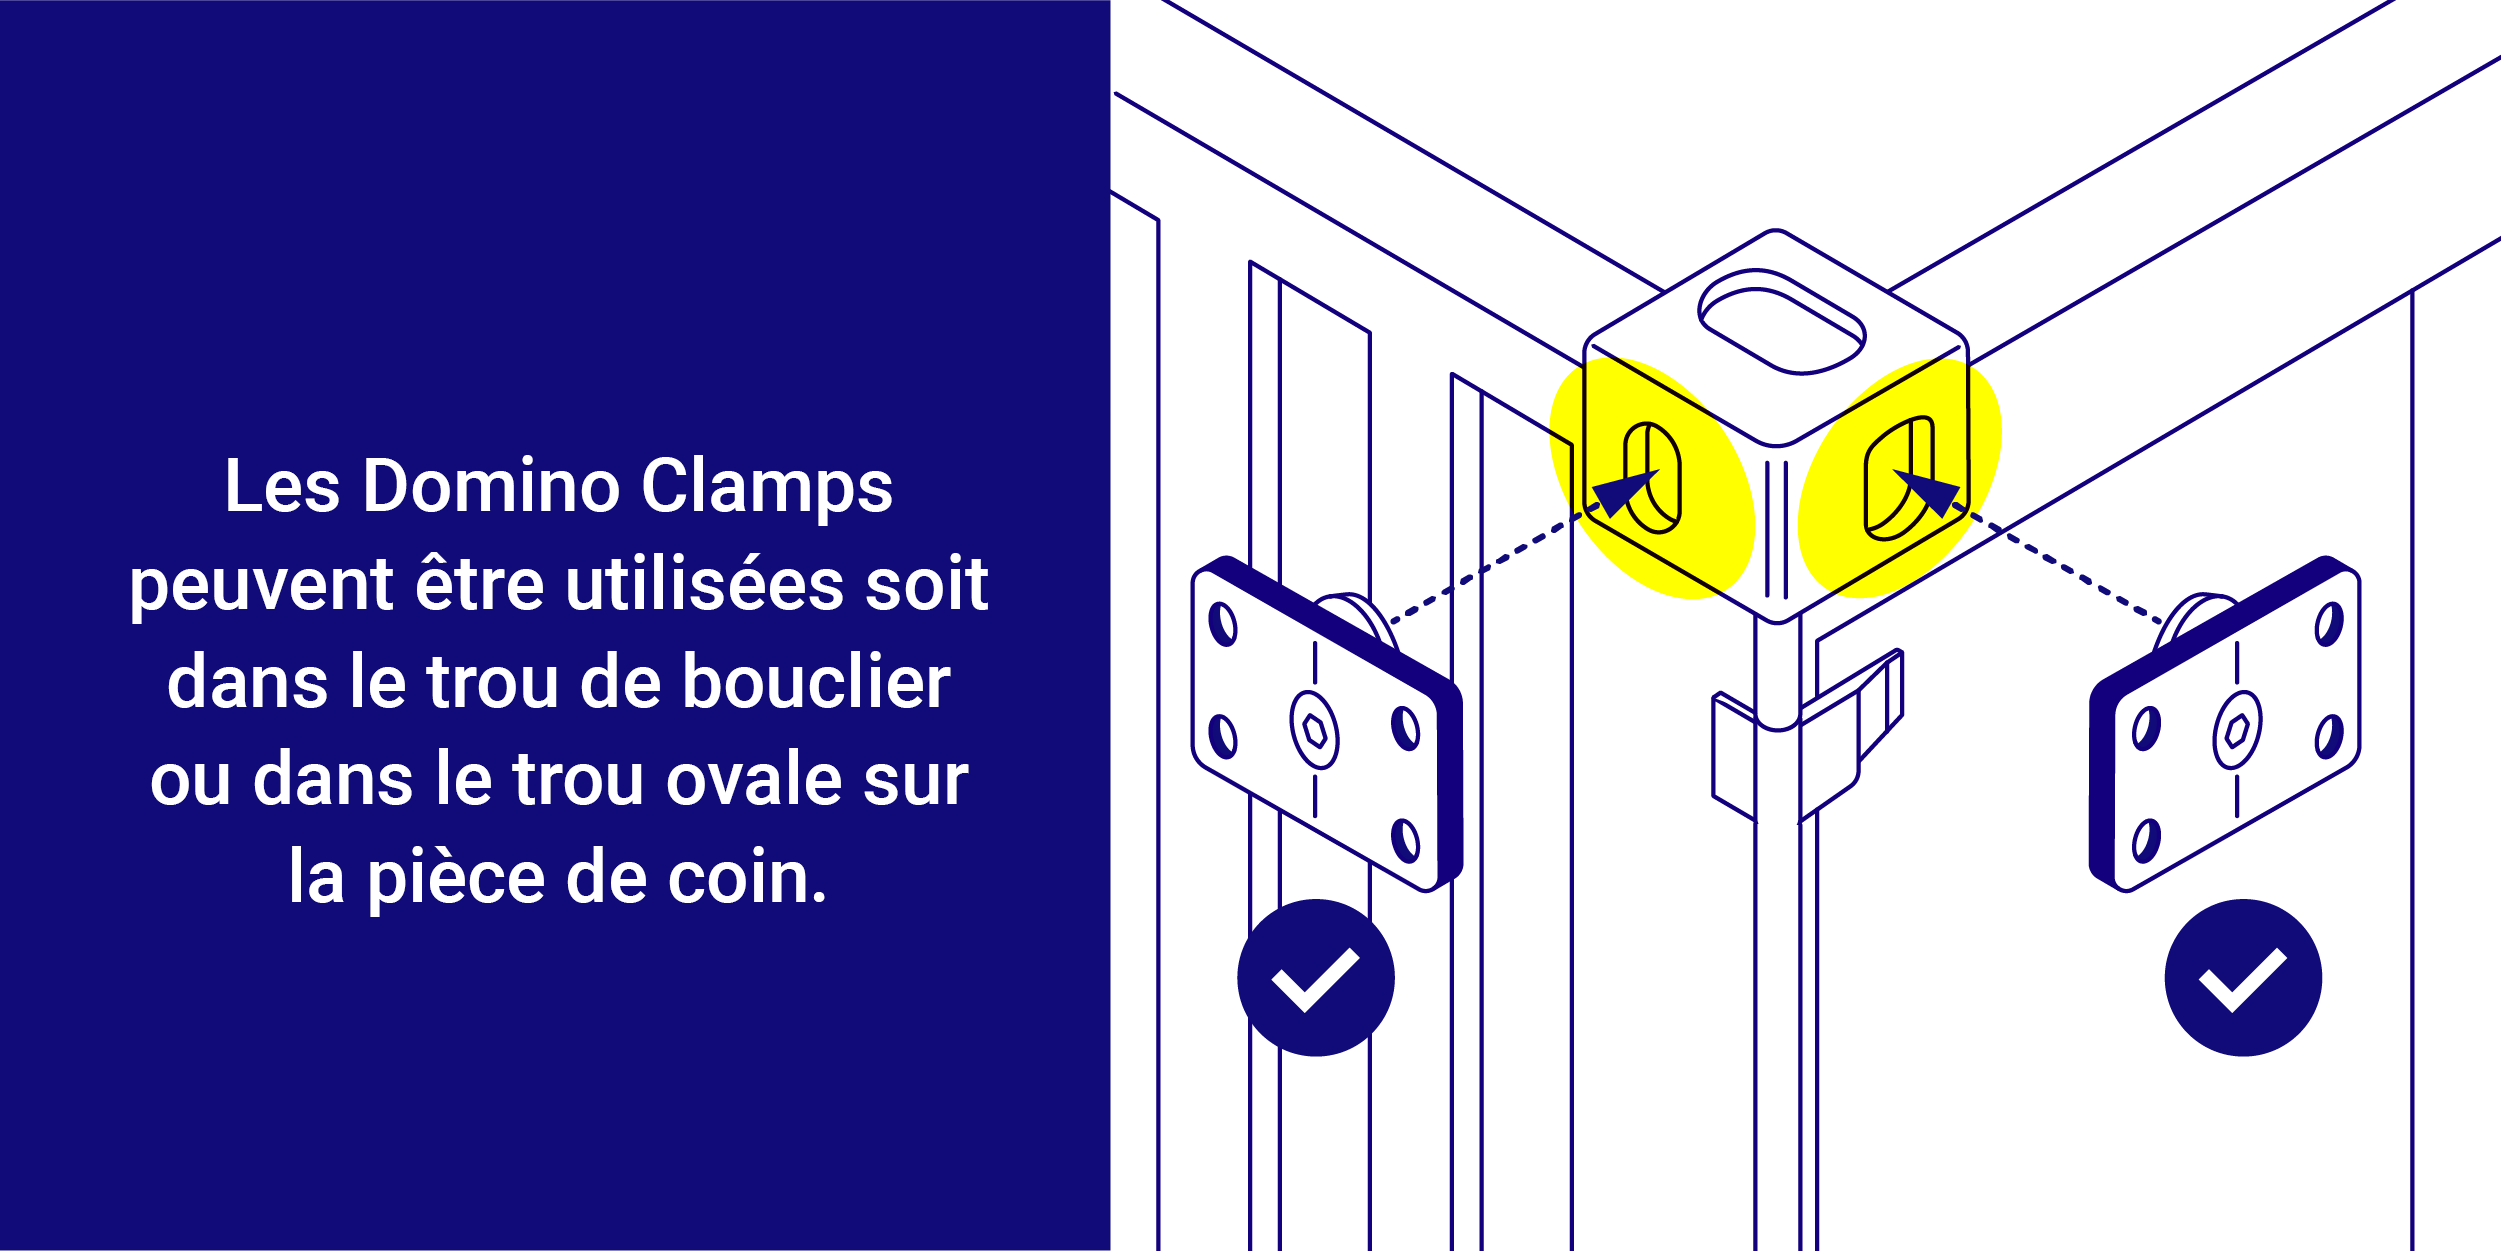 Les Domino Clamps peuvent servir dans les trous de bouclier ou les trous ovales des conteneurs maritimes